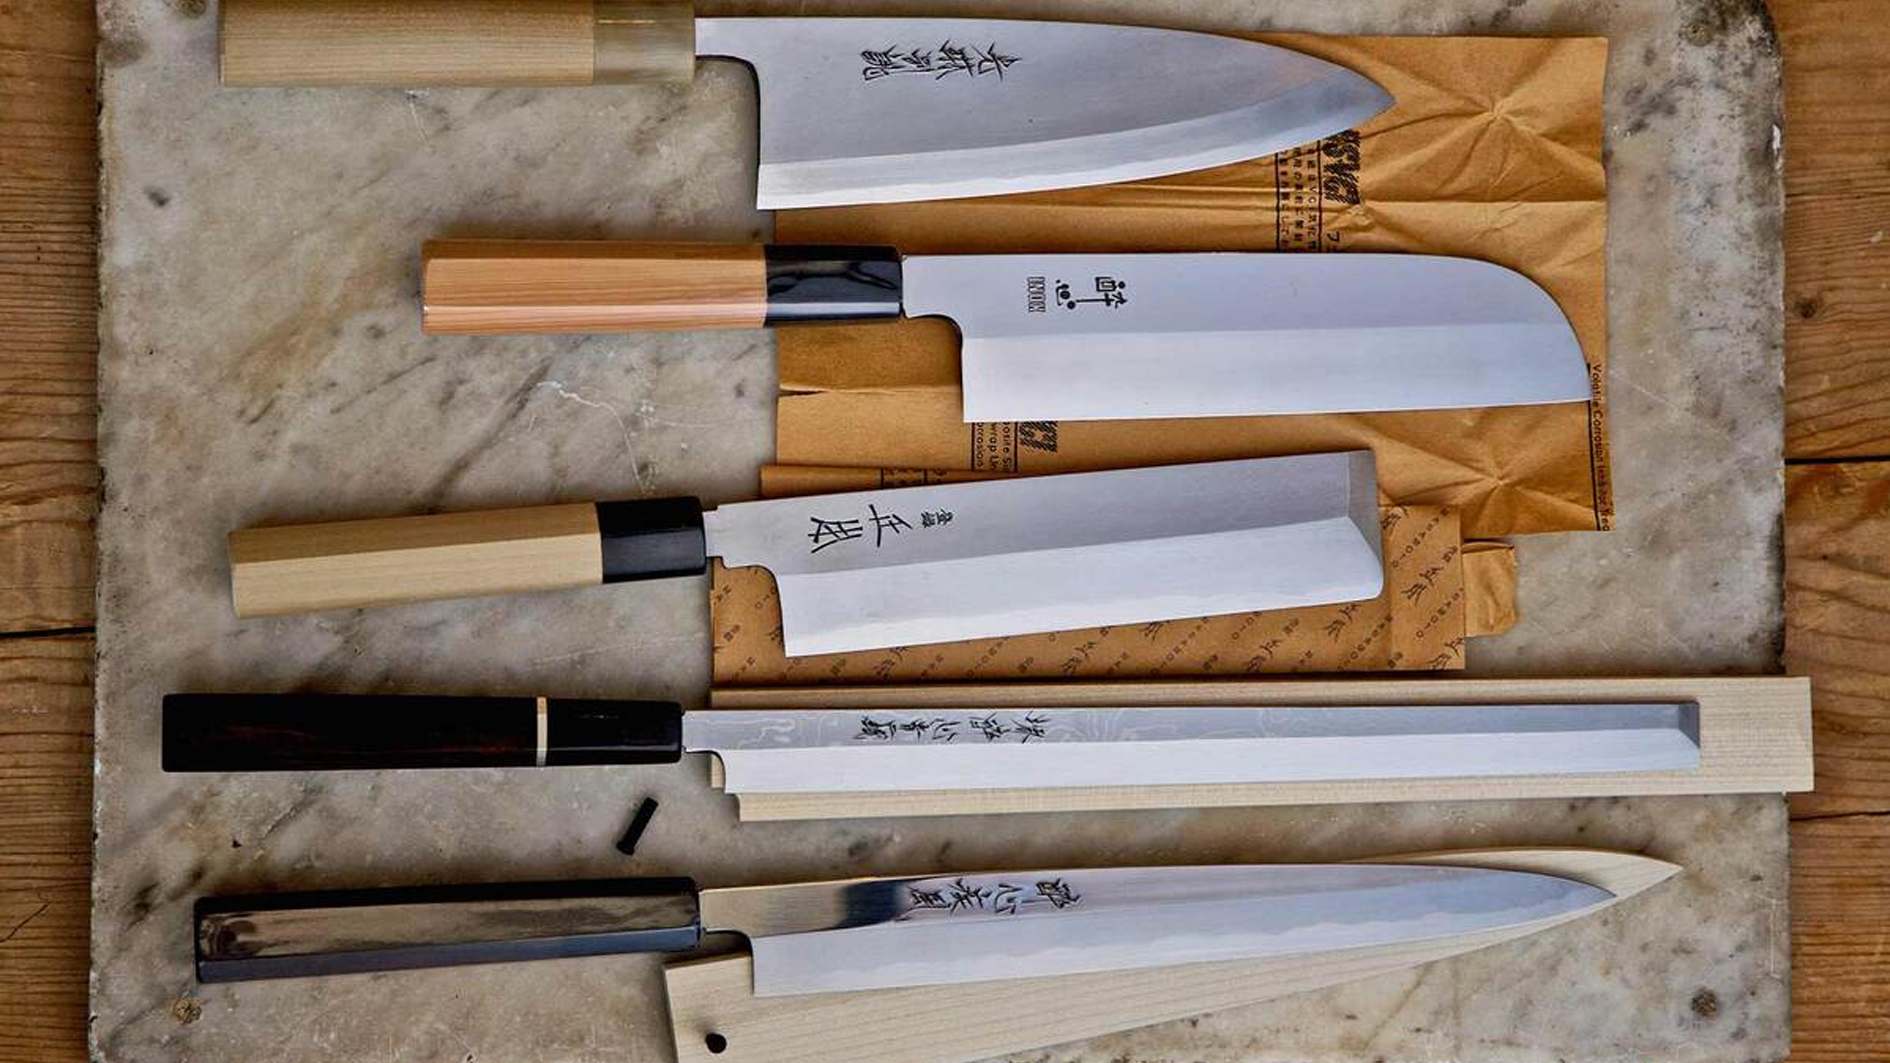 سكاكين الطبخ اليابانية تحظى بشهرة متزايدة